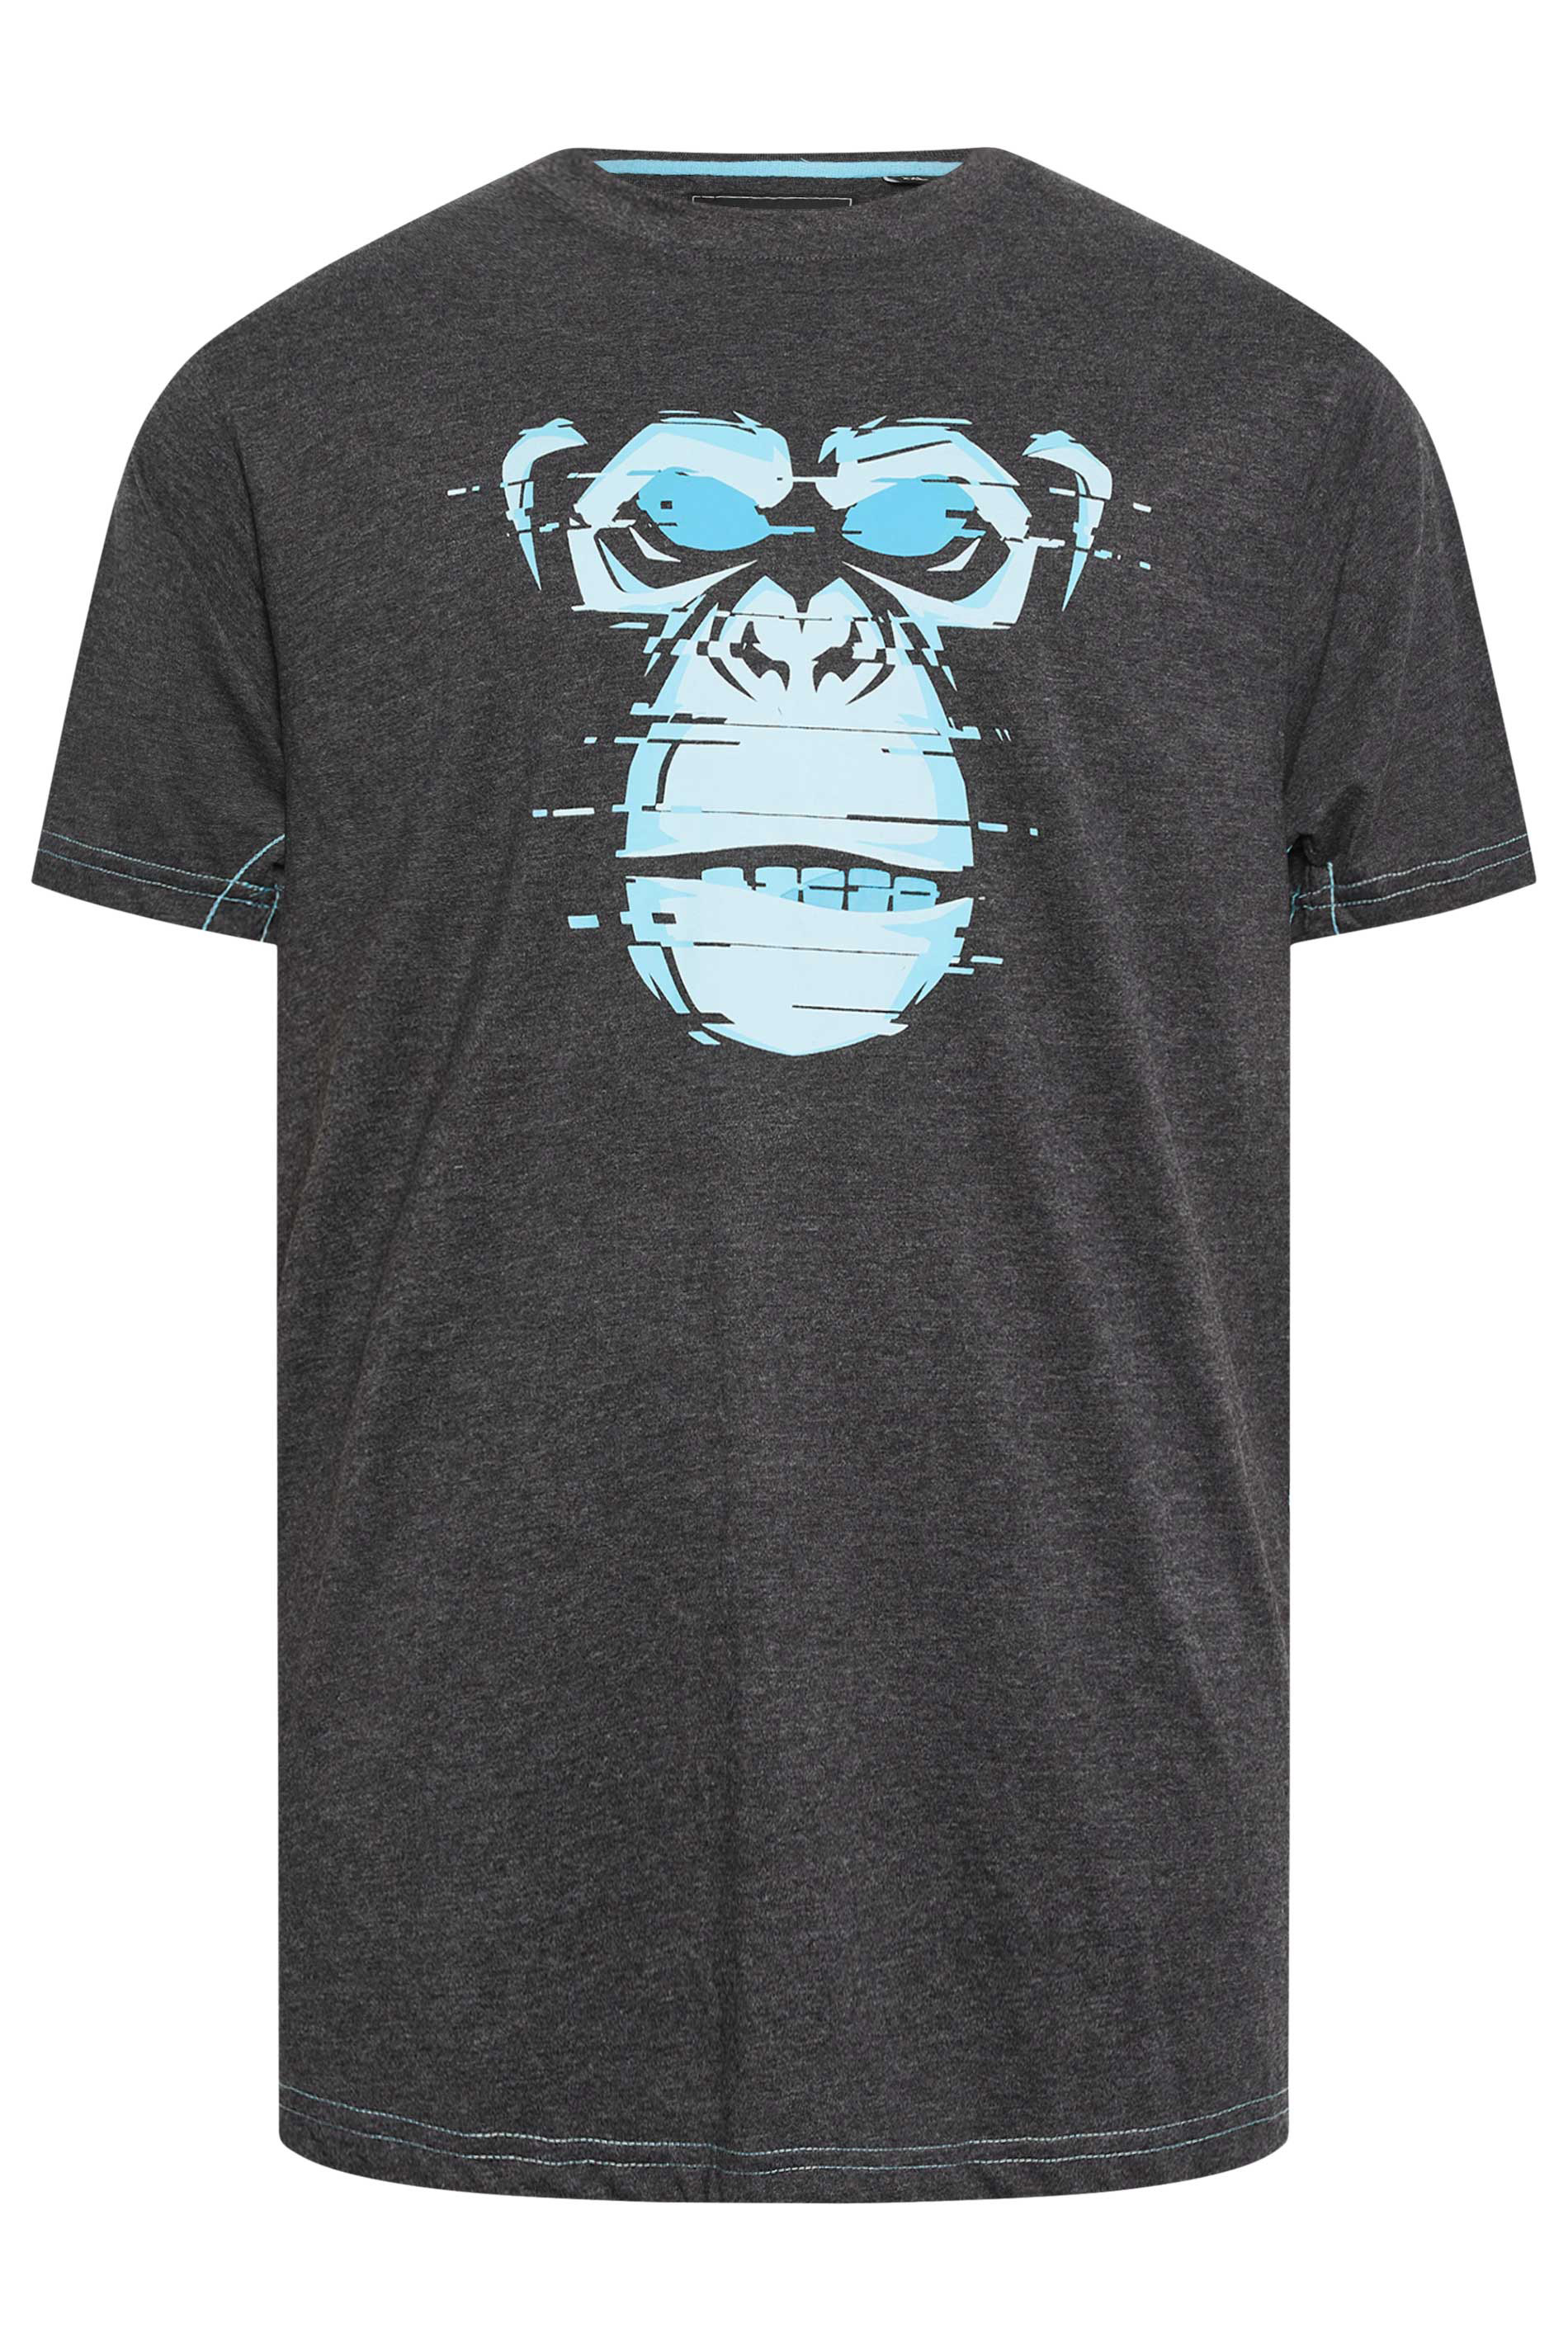 KAM Big & Tall Charcoal Grey Gorilla Print T-Shirt 3